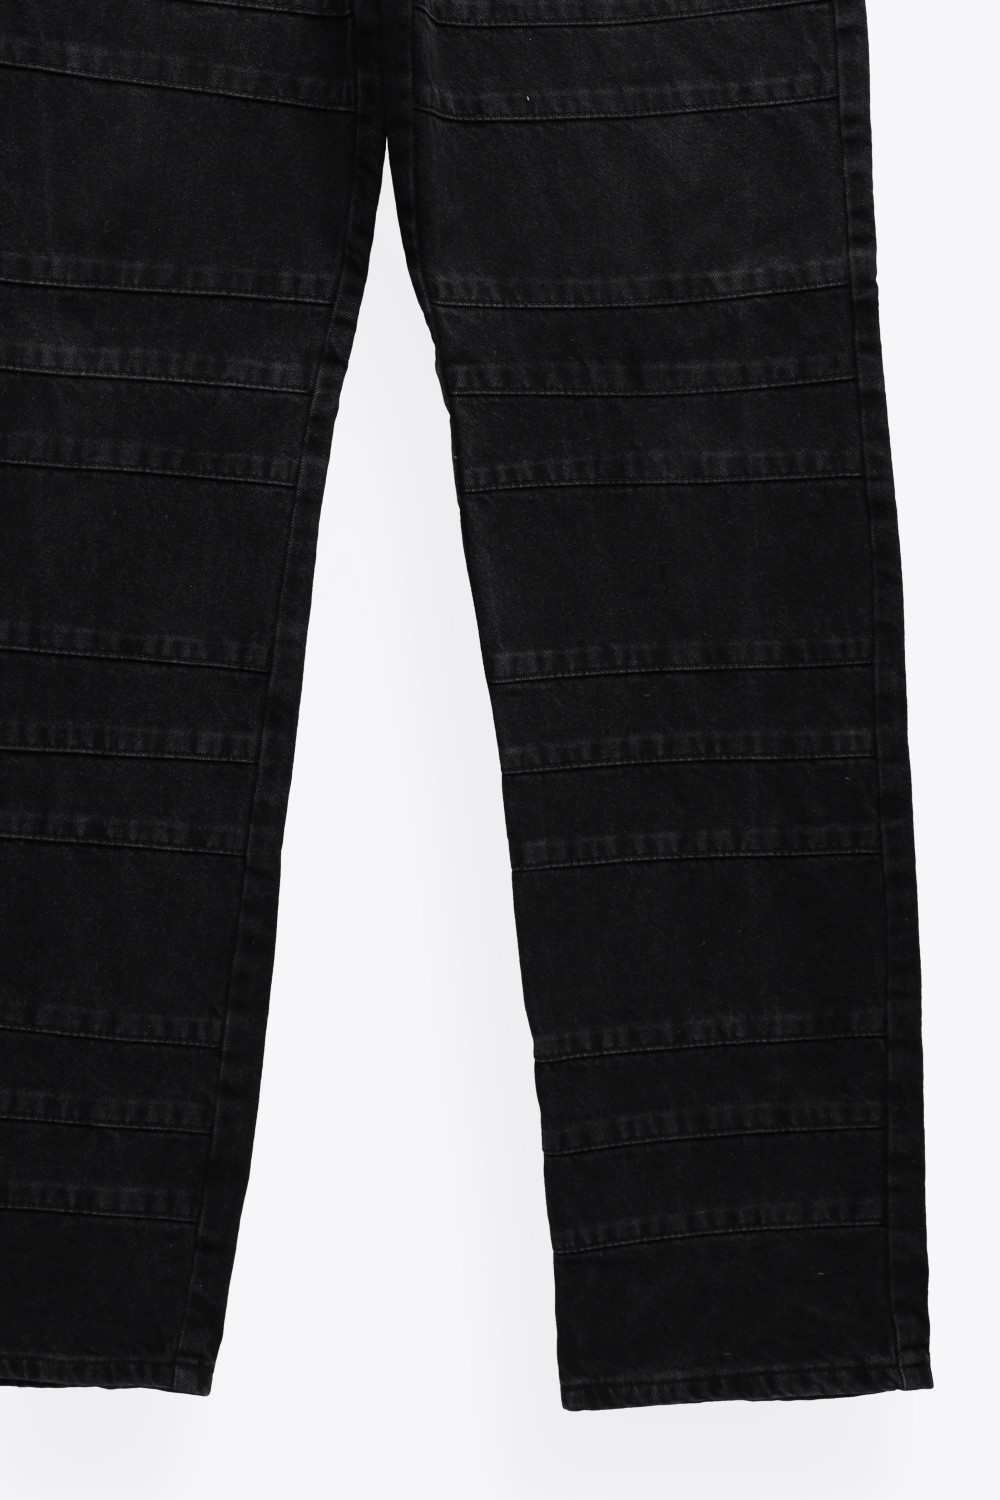 czarne proste spodnie ozdobne szwy guziki kieszenie